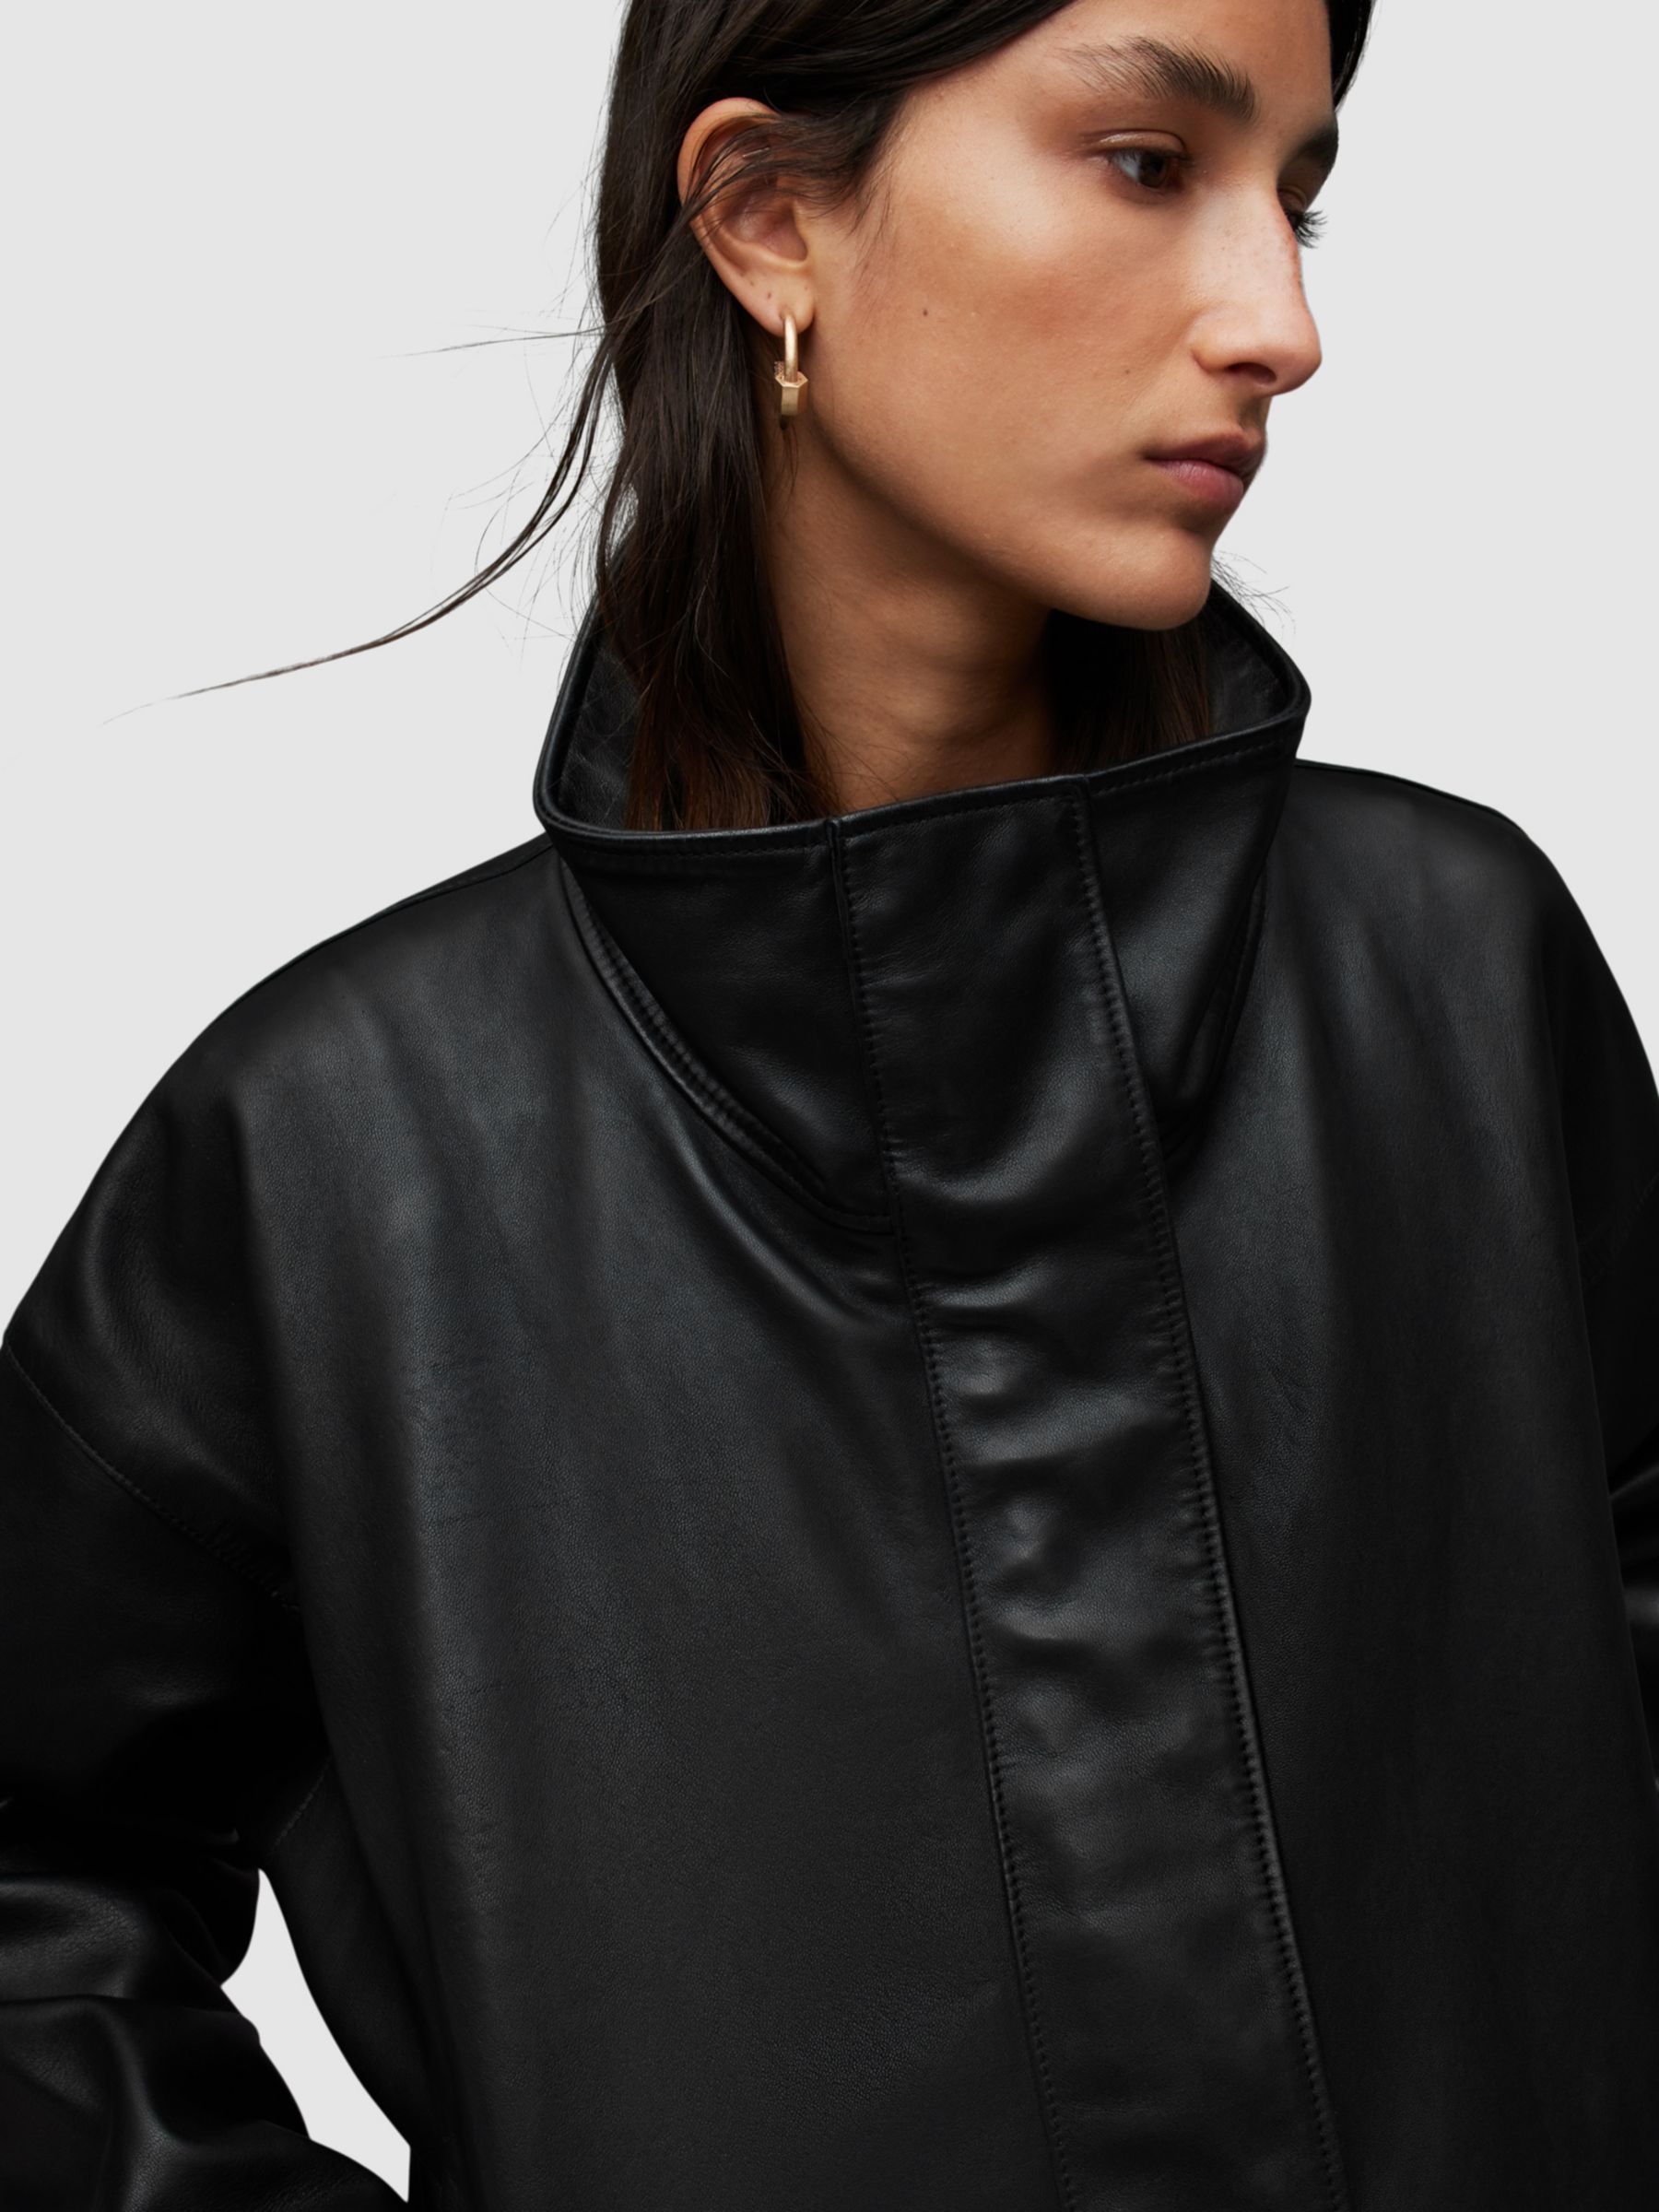 Buy AllSaints Ryder Leather Jacket, Black Online at johnlewis.com